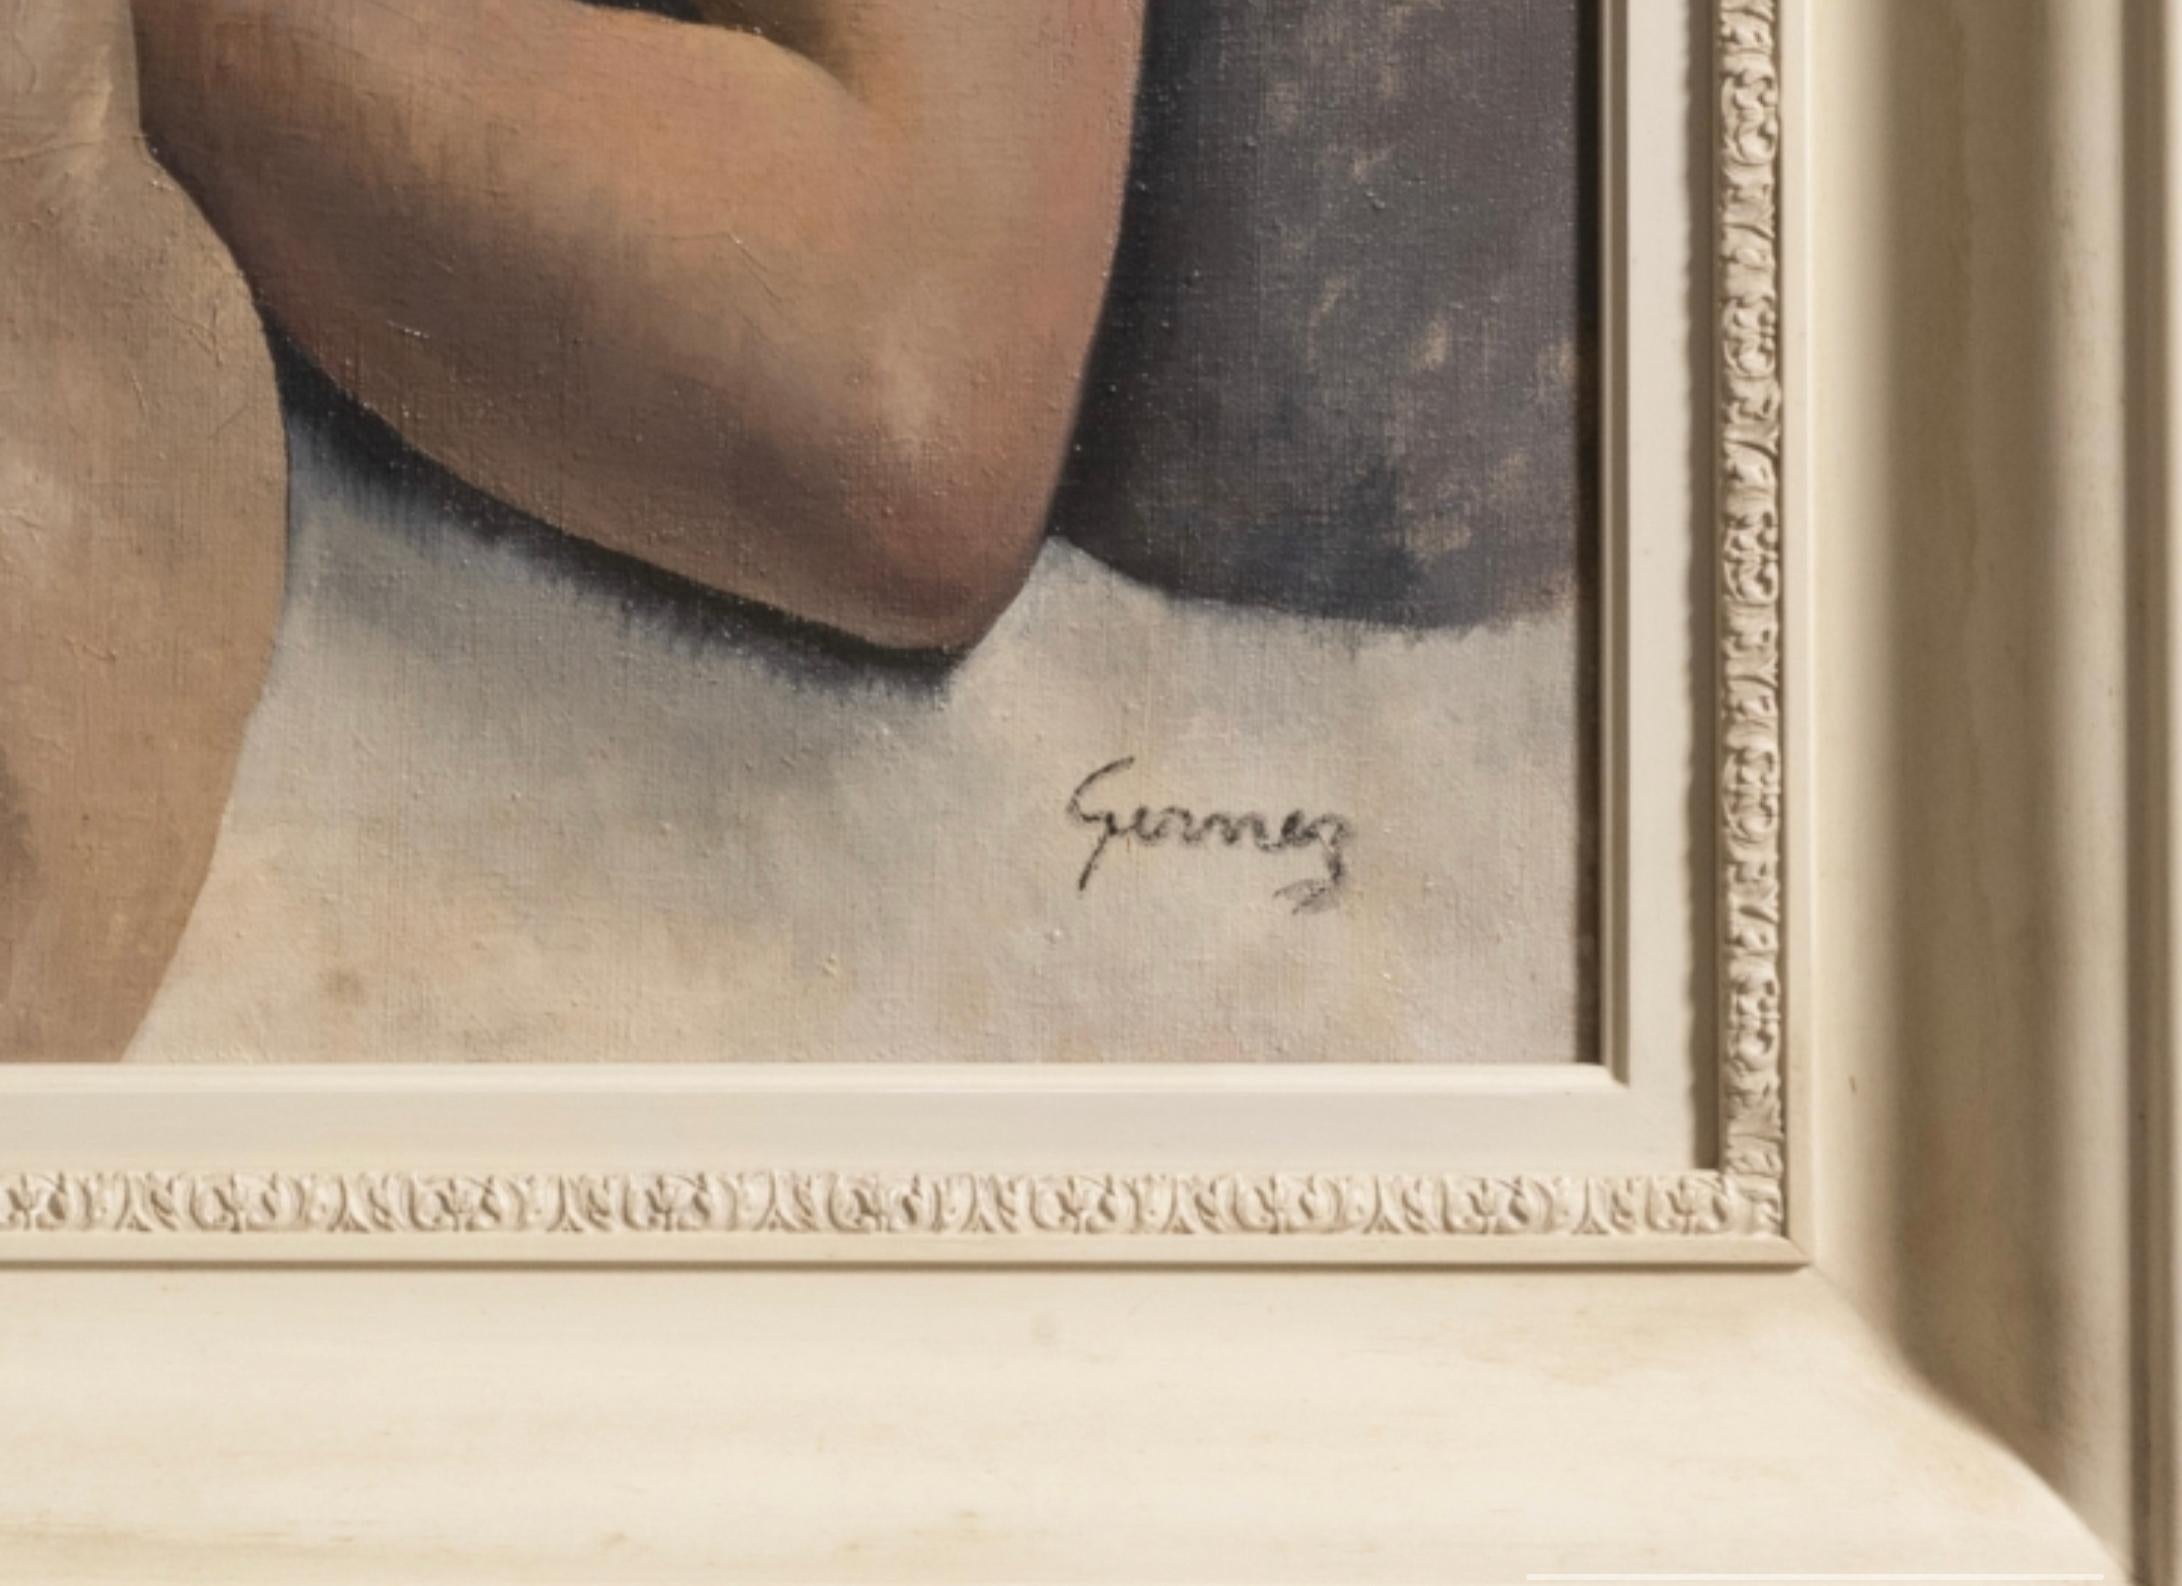 Tableau “Grand Nu couché” de Paul-Elie Gernez, illustre peintre et pastelliste français.

Signature dans le coin inférieur droit.

Dimensions : H83 x L136,5cm

Prix sur demande.